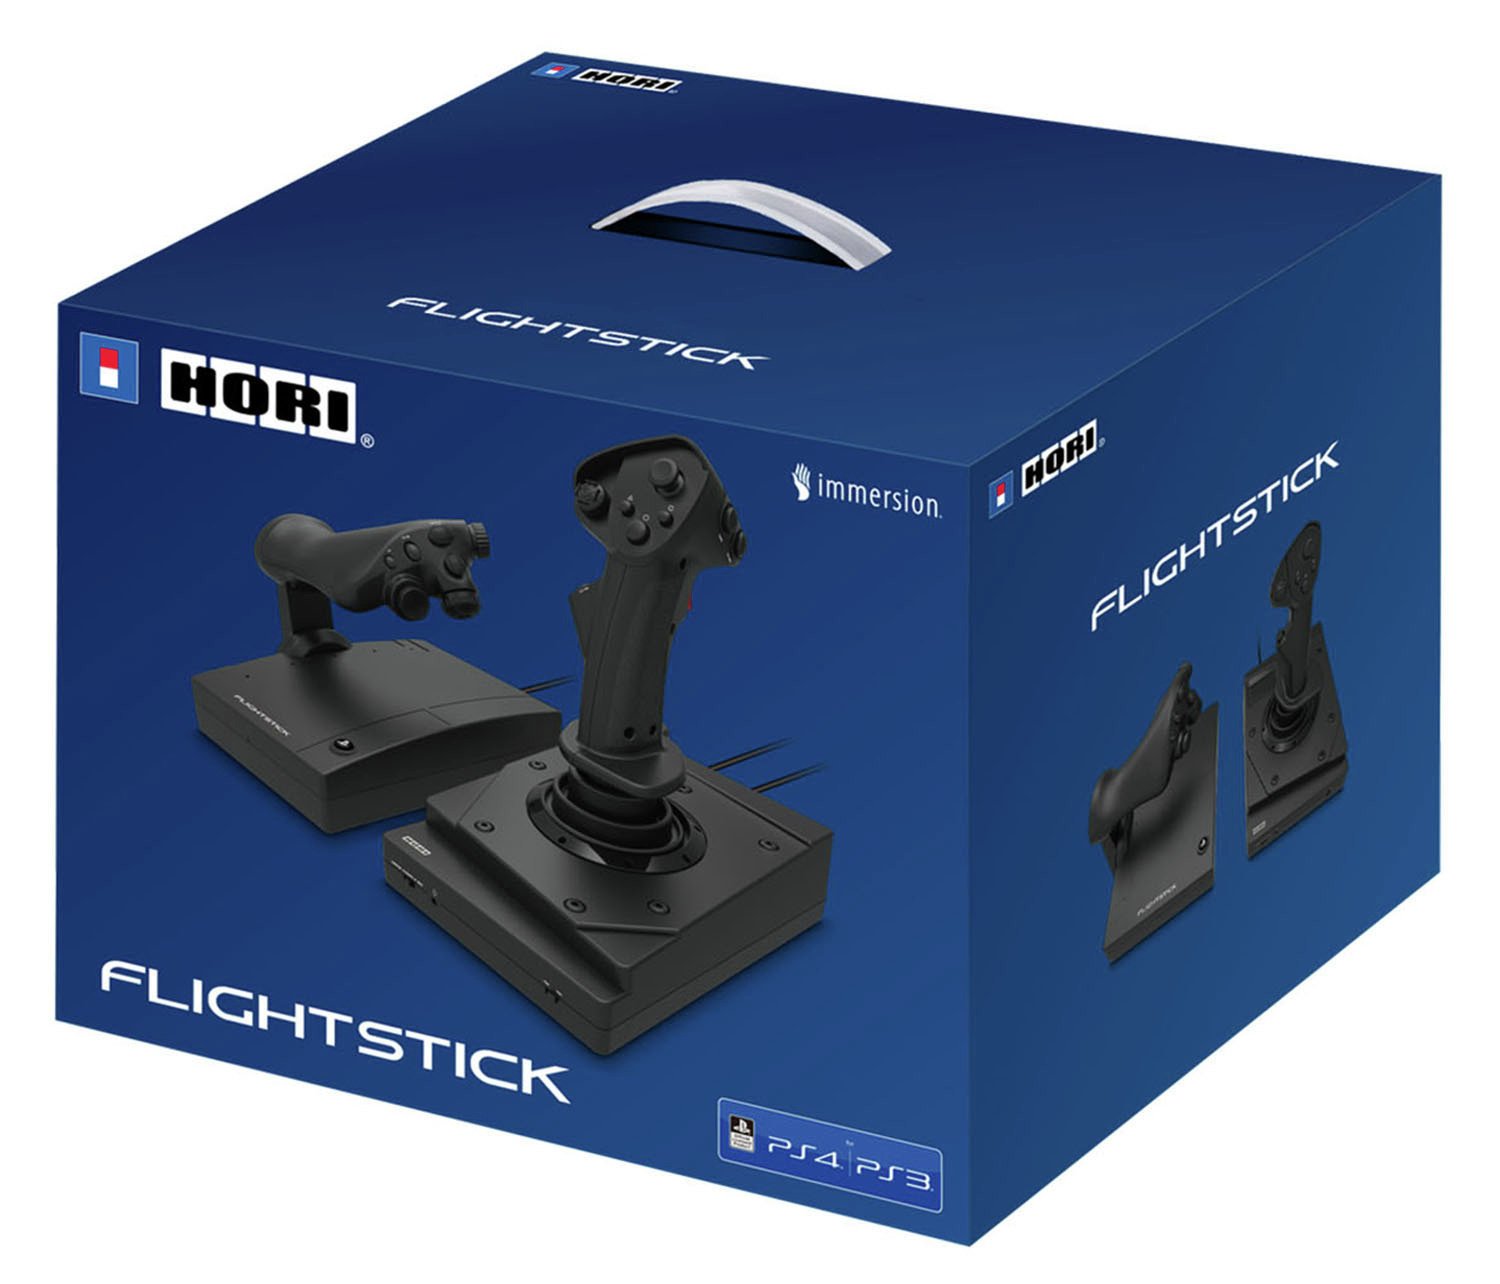 Hori HOTAS Flight Stick for PS4 & PC Review